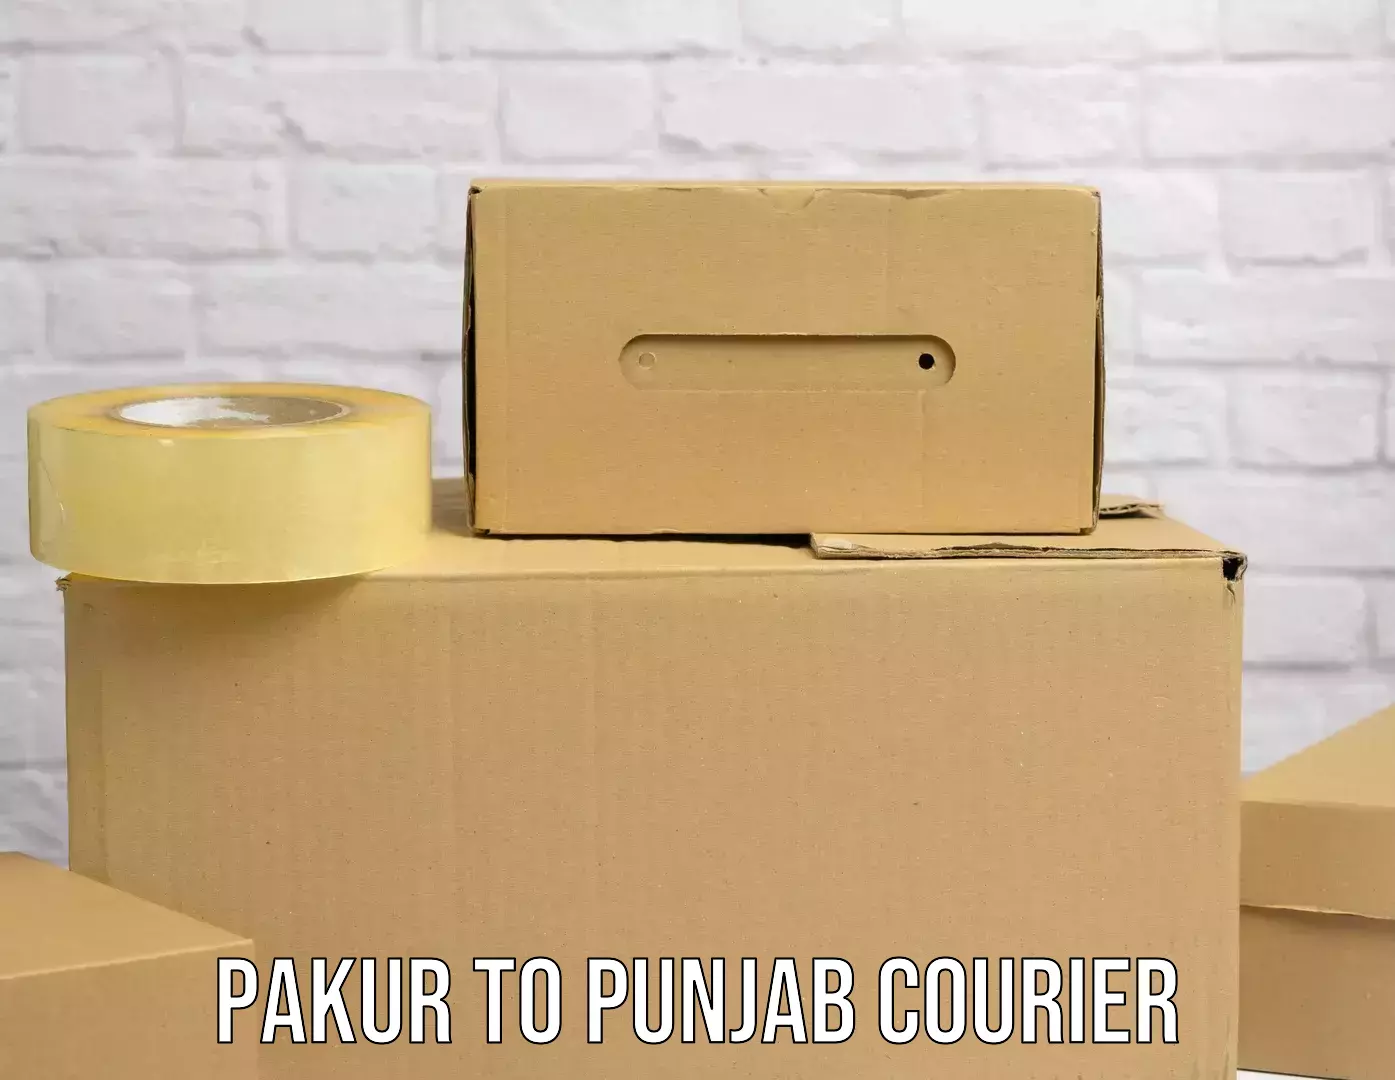 Global shipping networks Pakur to Dinanagar